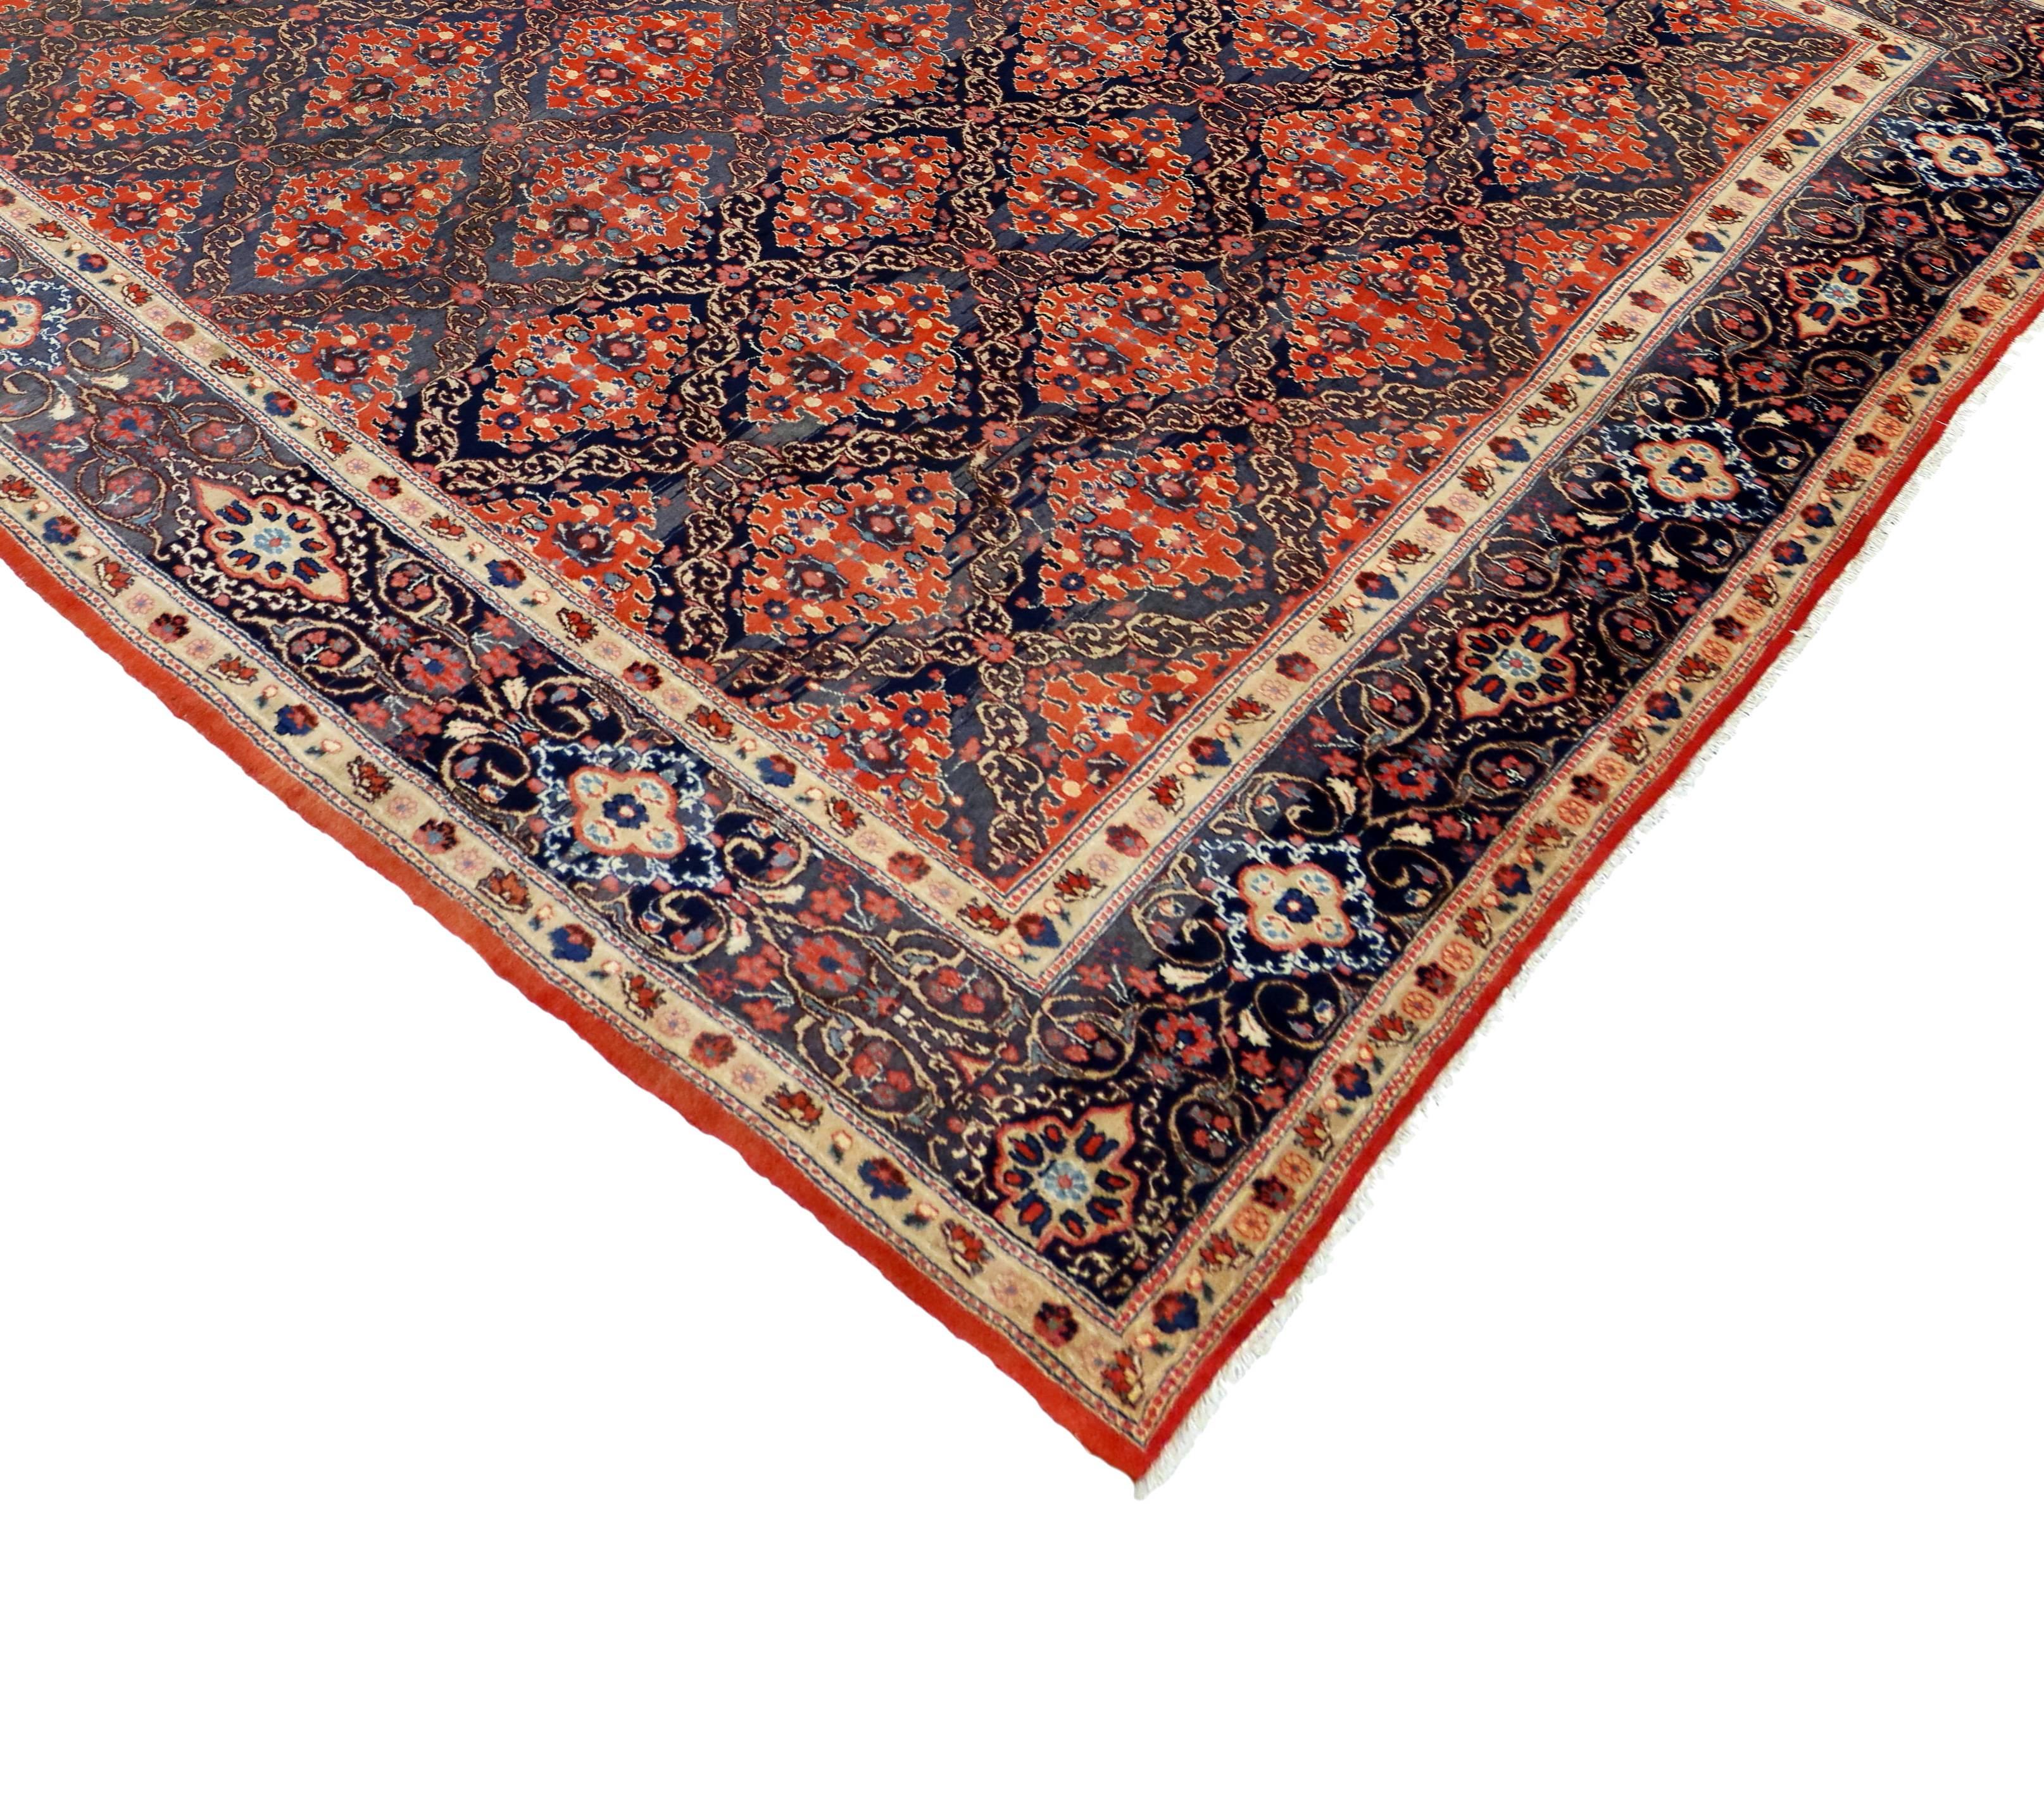 75579 Vintage Persian Mashhad Teppich mit Modern Federal Style 09'09 x 12'09. Dieser handgeknüpfte persische Mashhad-Teppich aus Wolle im Vintage-Stil zeichnet sich durch ein All-Over-Gartengittermuster aus, das aus einem symmetrischen Rautenmuster